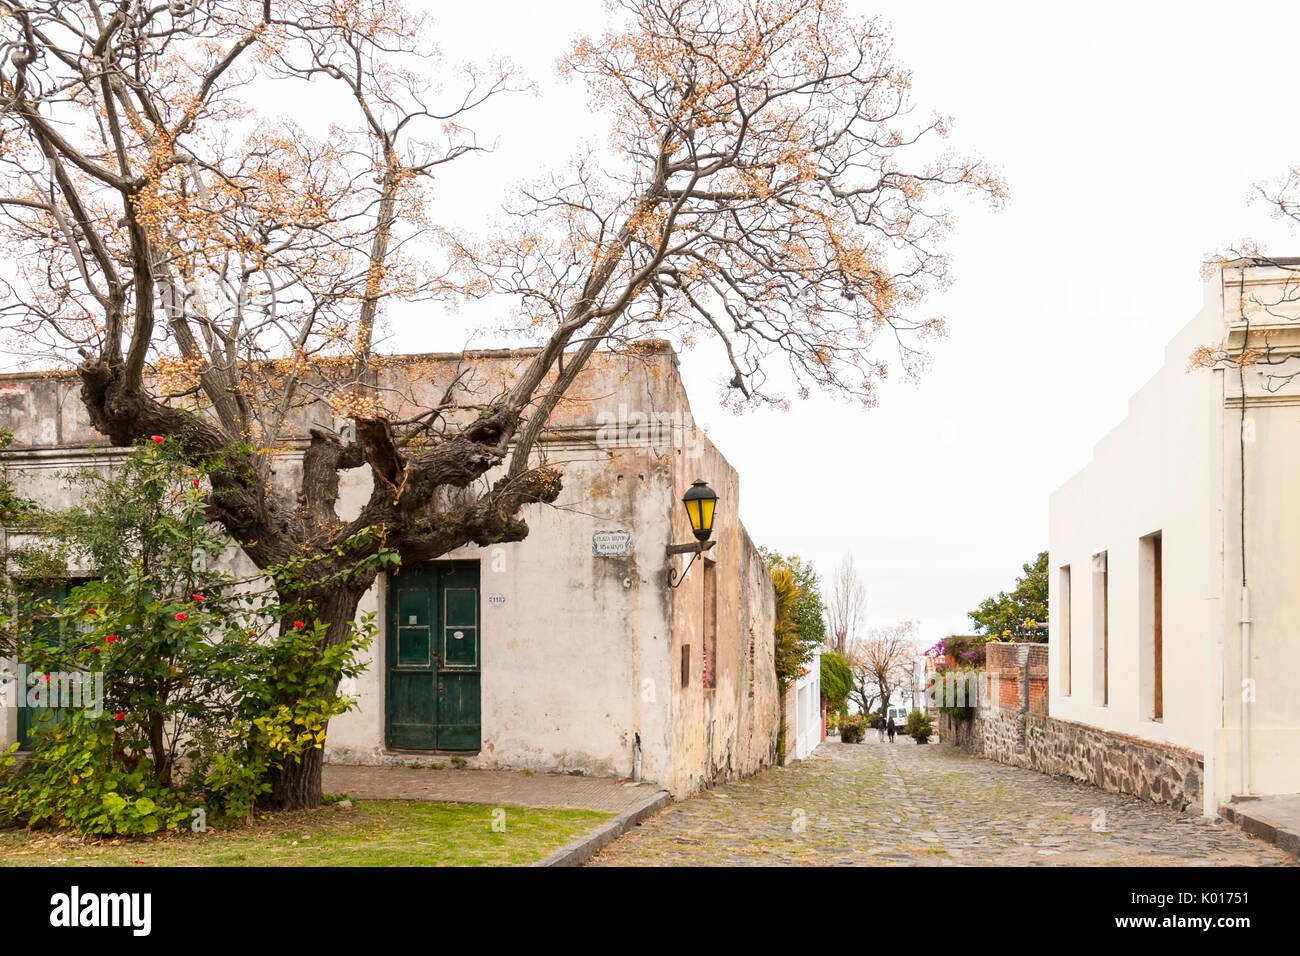 Colonial architecture in the cobbled streets of Colonia del Sacramento, Uruguay. UNESCO world heritage site Stock Photo